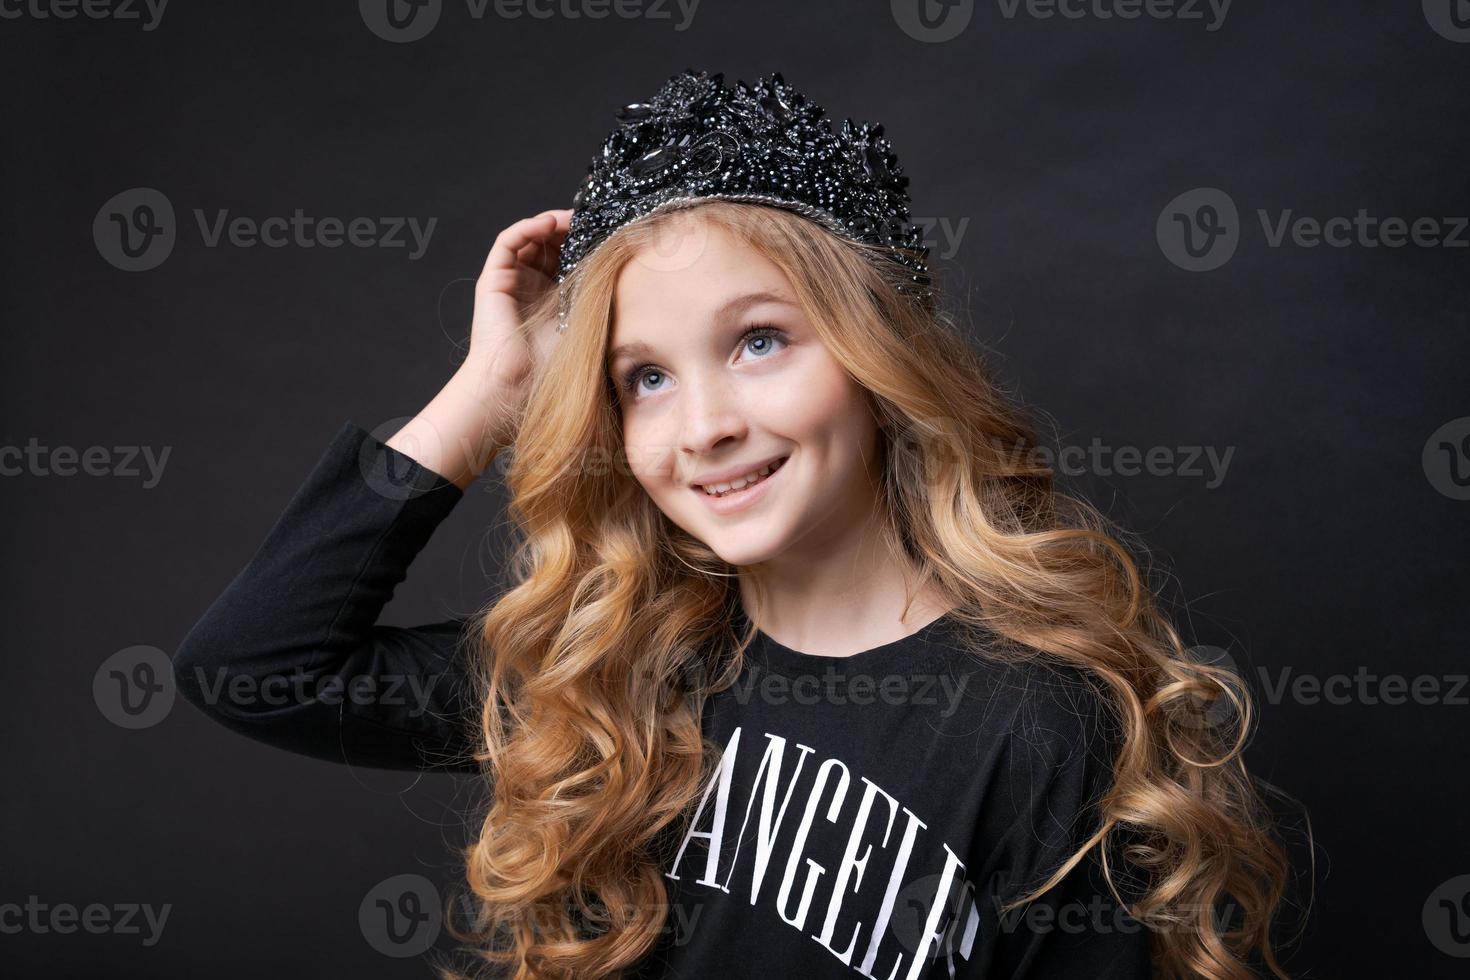 hermosa princesita vestida de negro con una corona en la cabeza posando foto